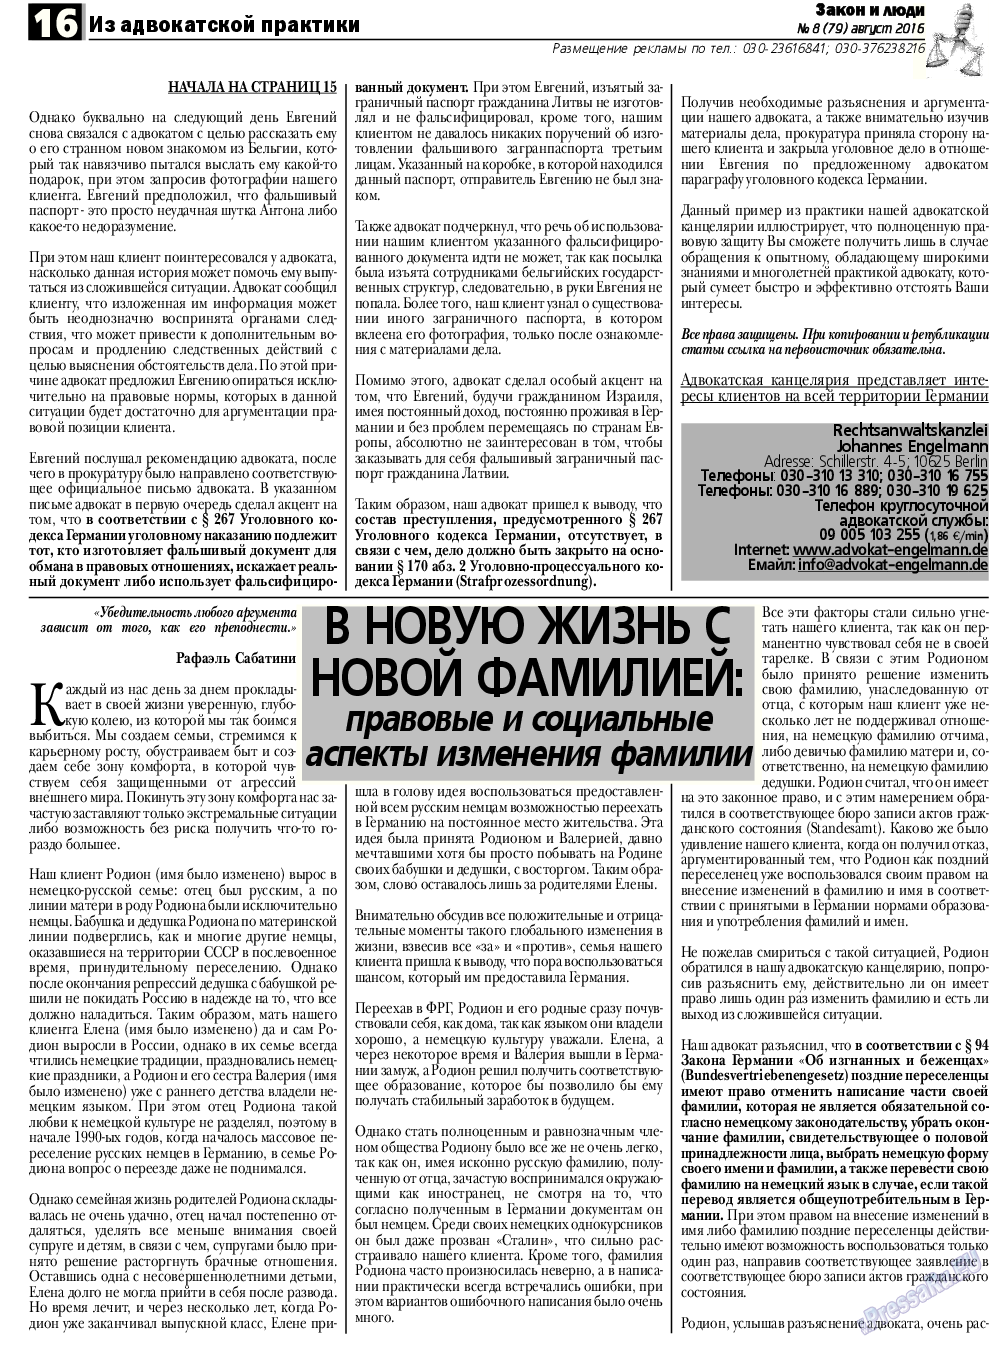 Закон и люди, газета. 2016 №8 стр.16